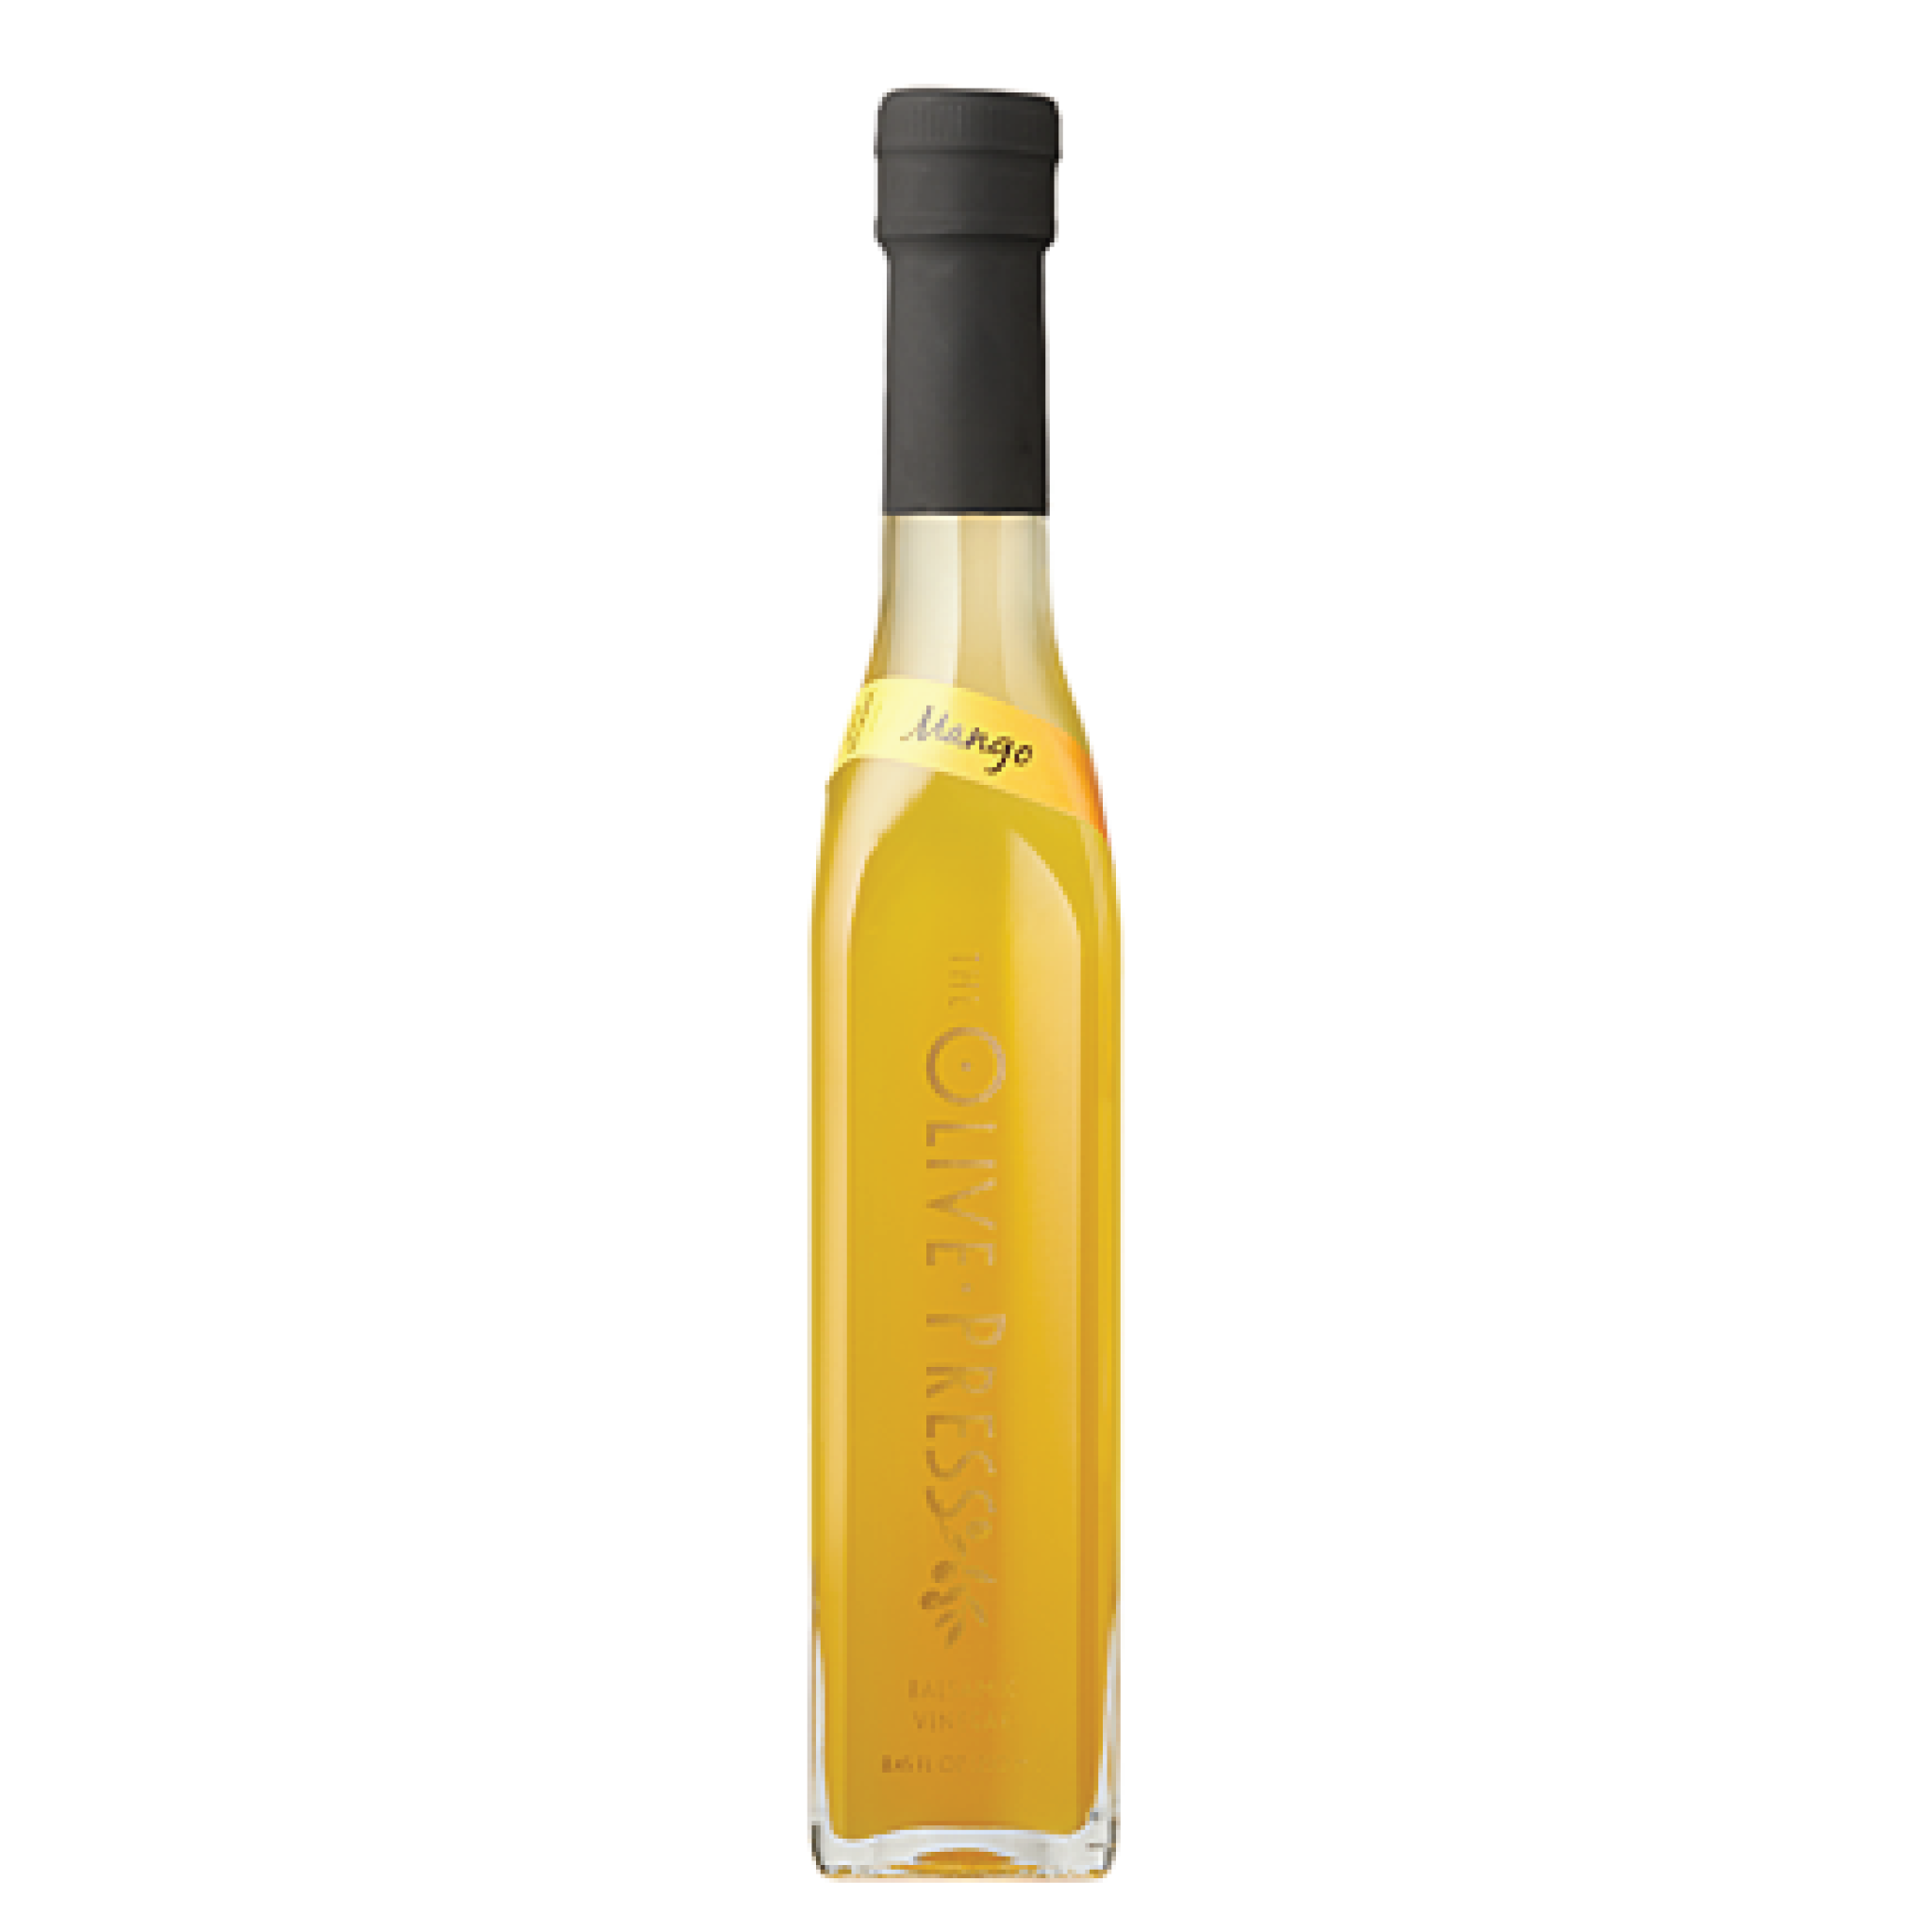 250-Bottle-Mango-Balsamic-Vinegar-2048x2048